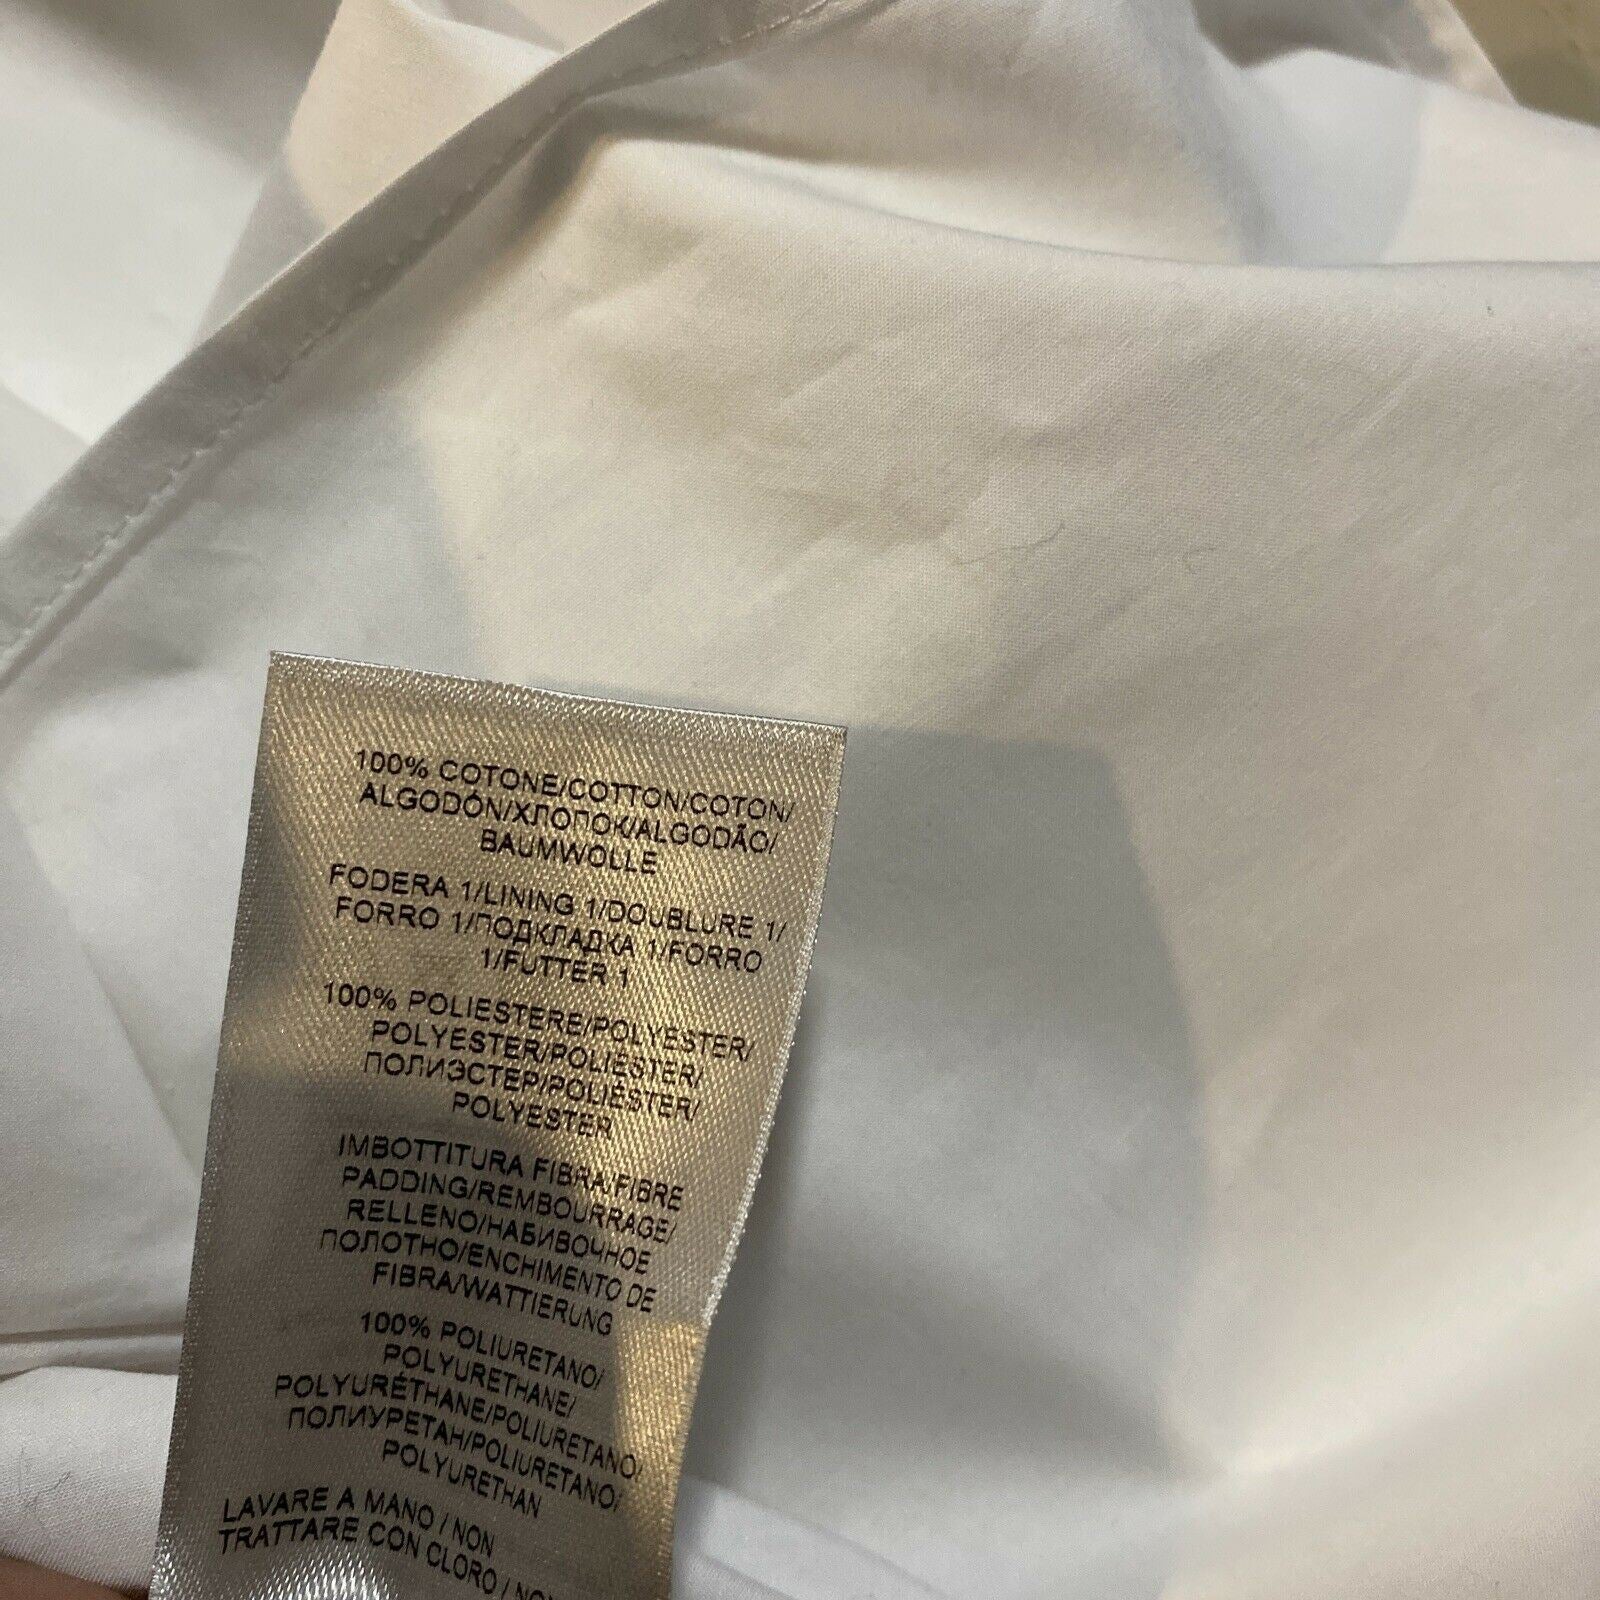 NWT $890 Мужская классическая рубашка Bottega Veneta Белая 40/15,5 Италия